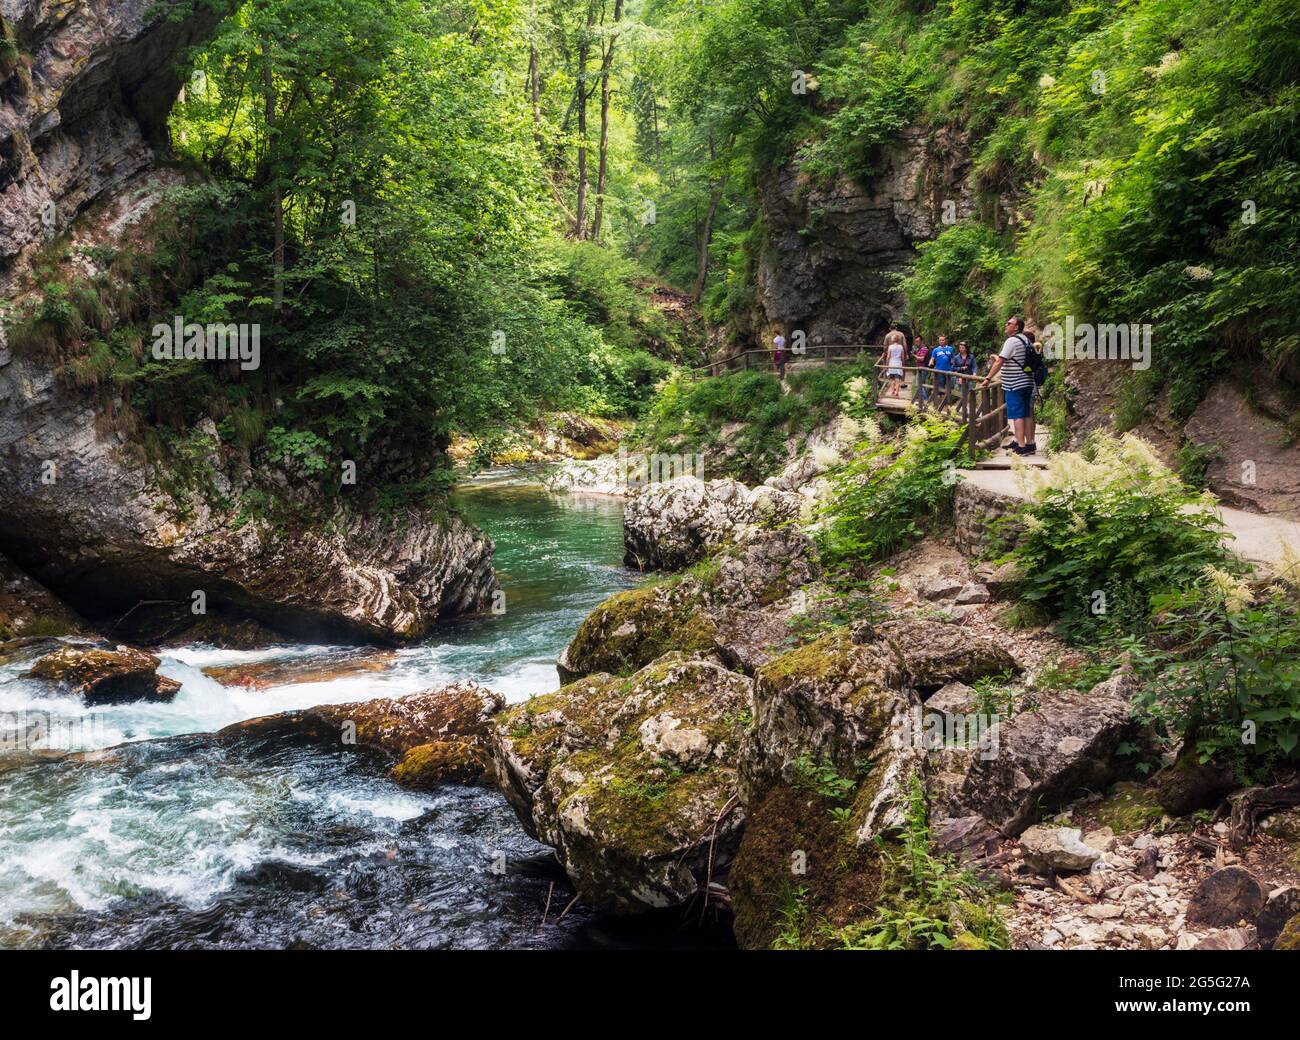 Il fiume Radovna che attraversa la gola di Vintgar vicino a Bled, alta Carniola, Slovenia. La gola si trova nel Parco Nazionale del Triglav. I visitatori camminano Foto Stock